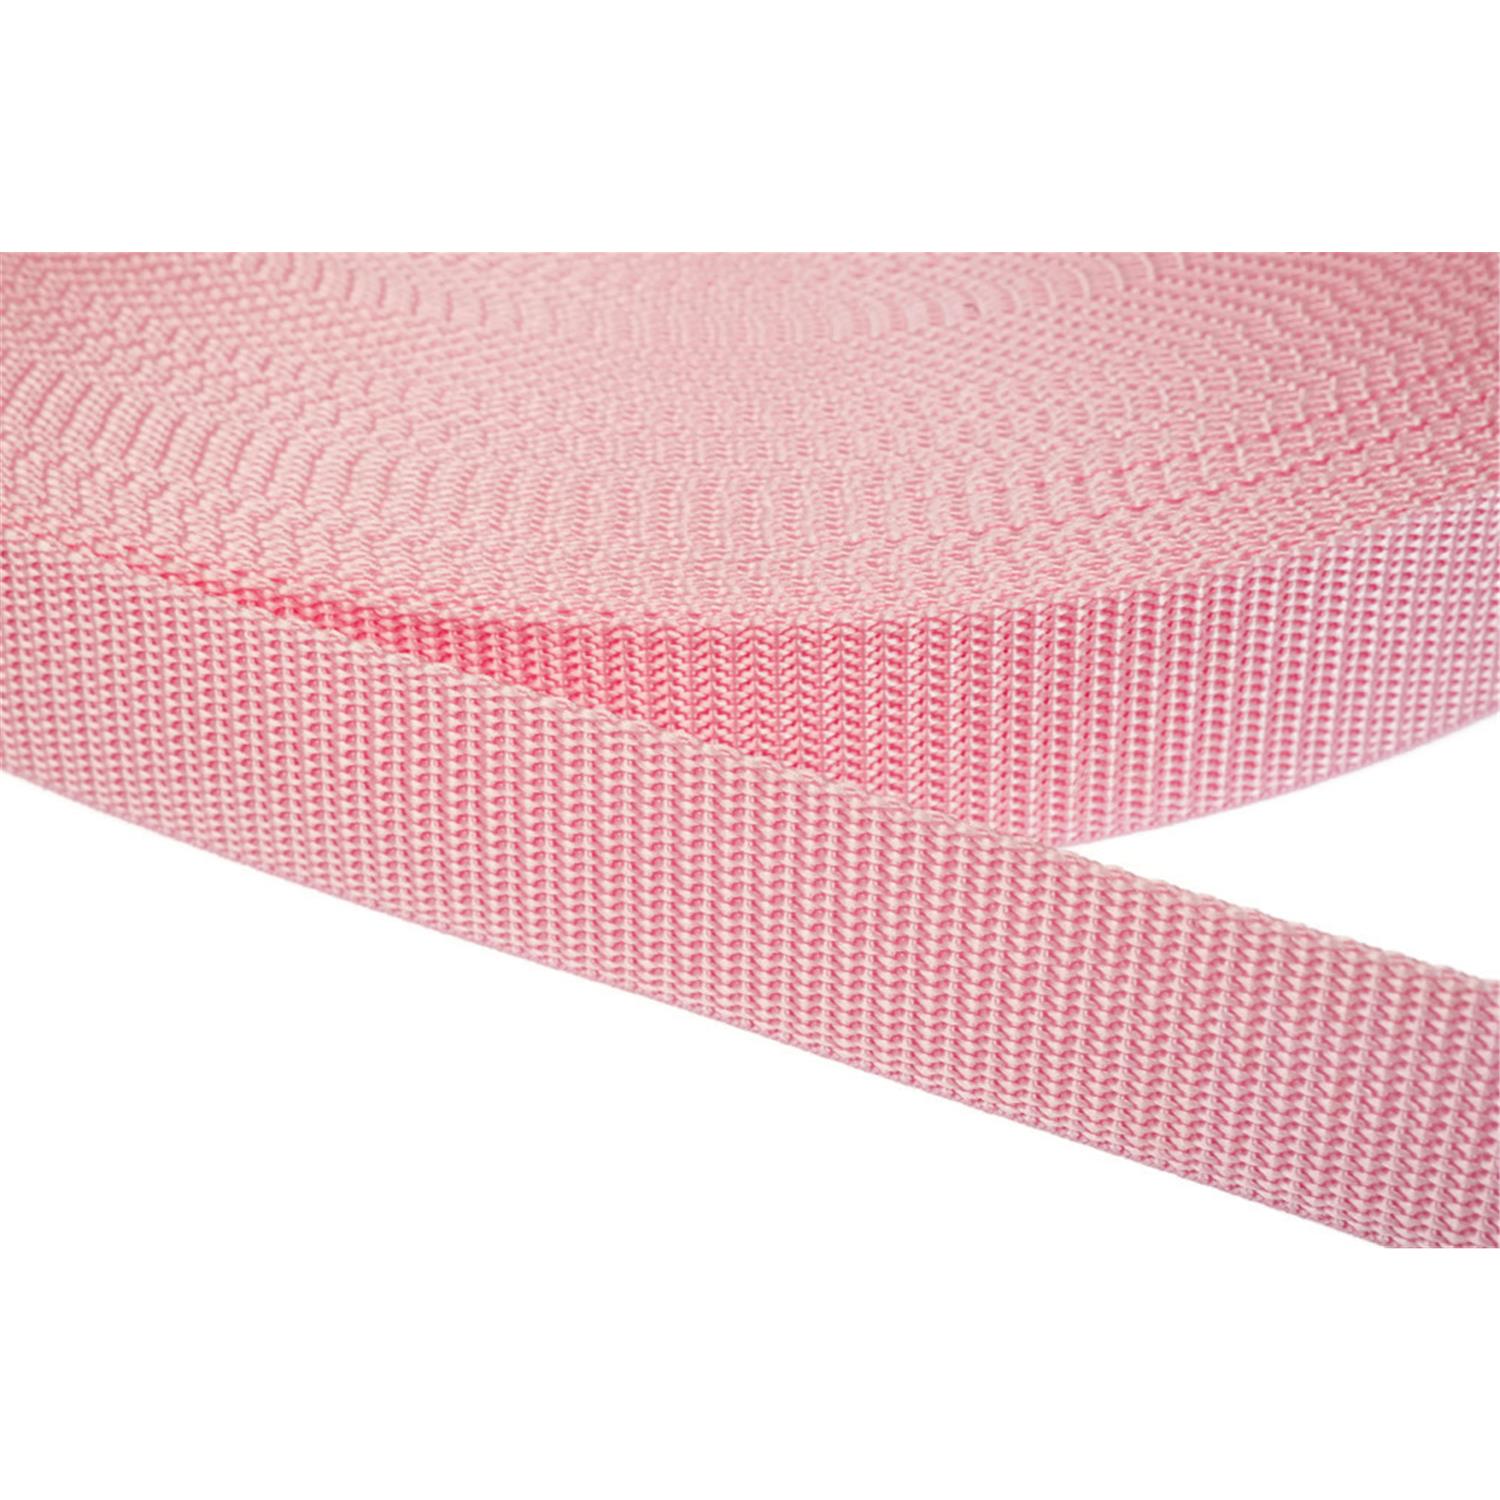 Gurtband 50mm breit aus Polypropylen in 41 Farben 12 - rosa 6 Meter